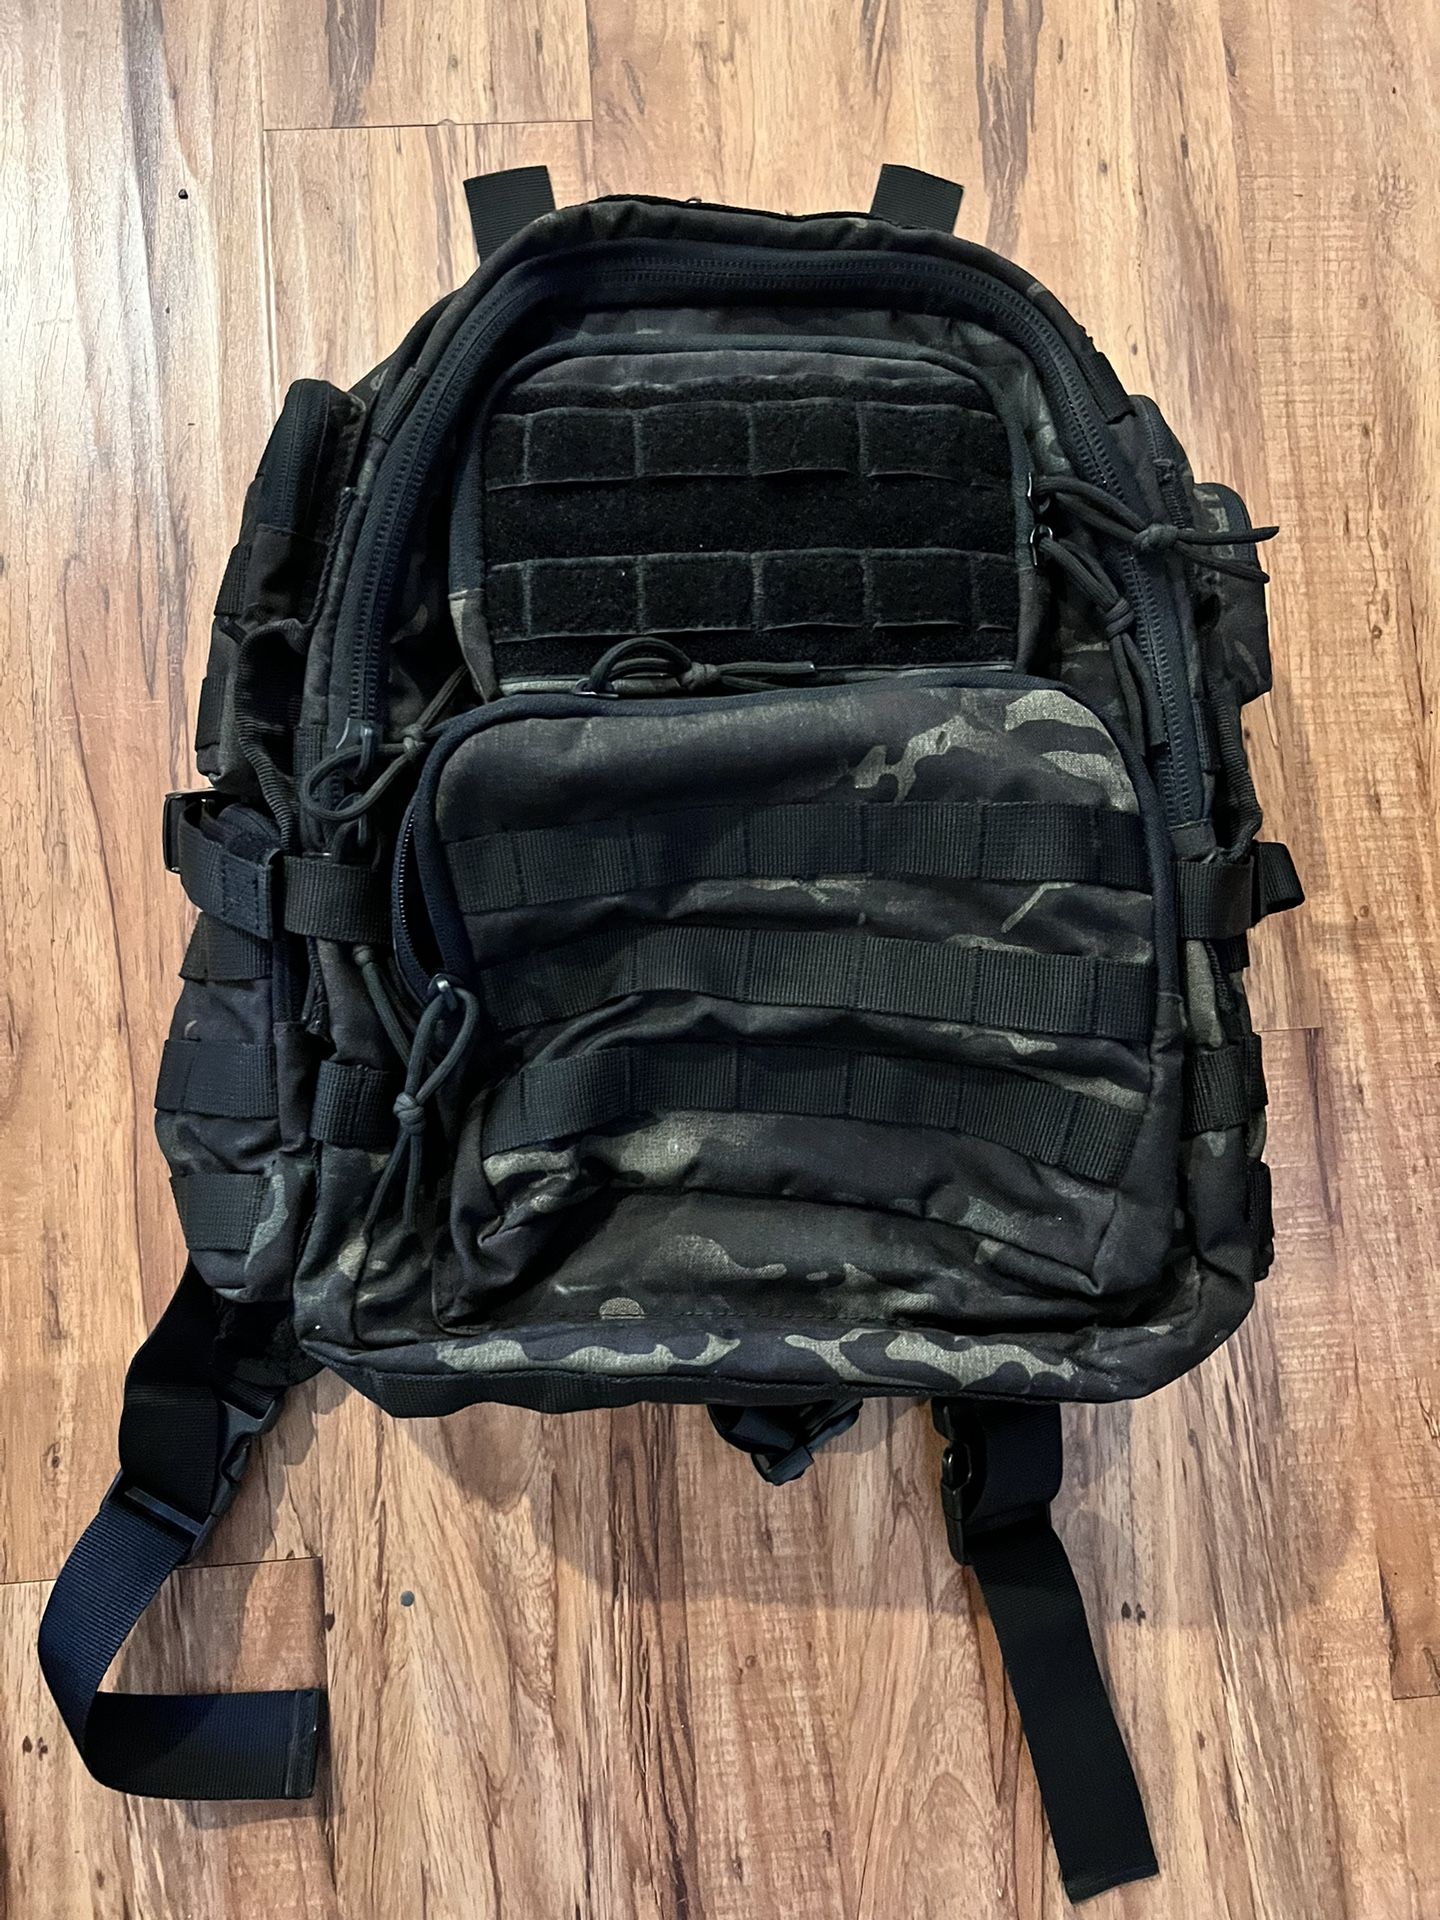 Tru-Spec Army backpack 